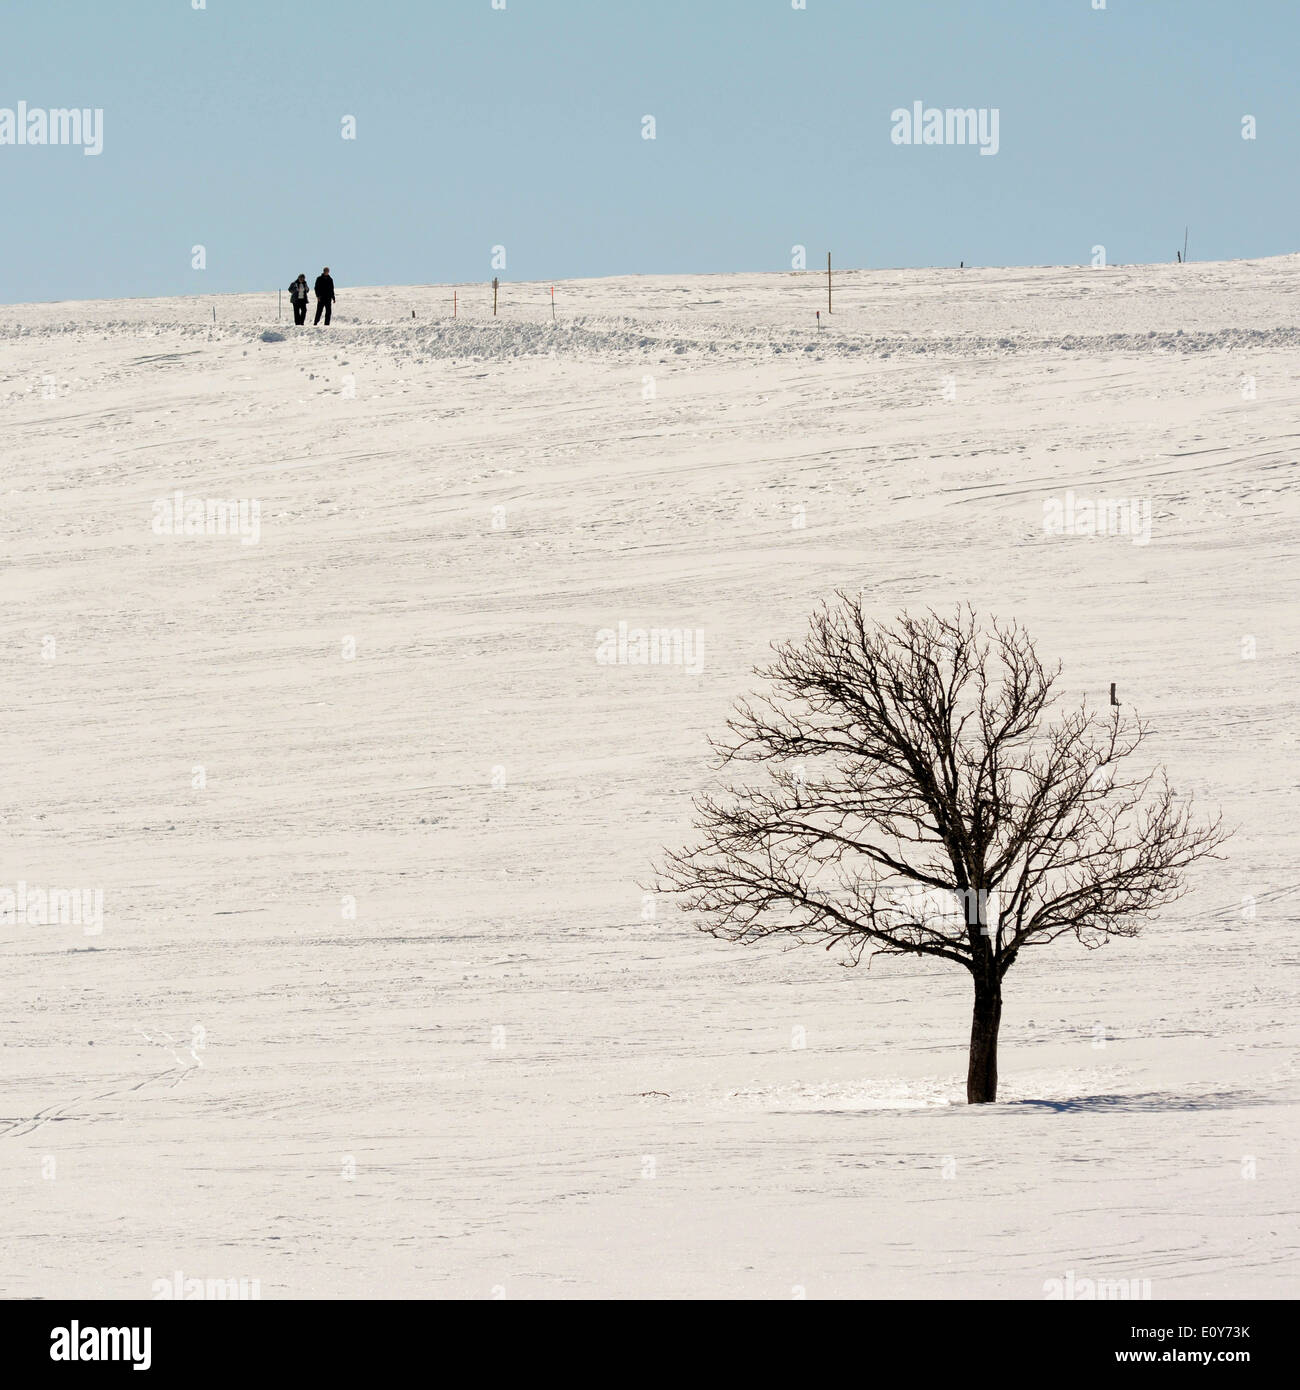 Dos senderistas en una escena de invierno paisaje Foto de stock